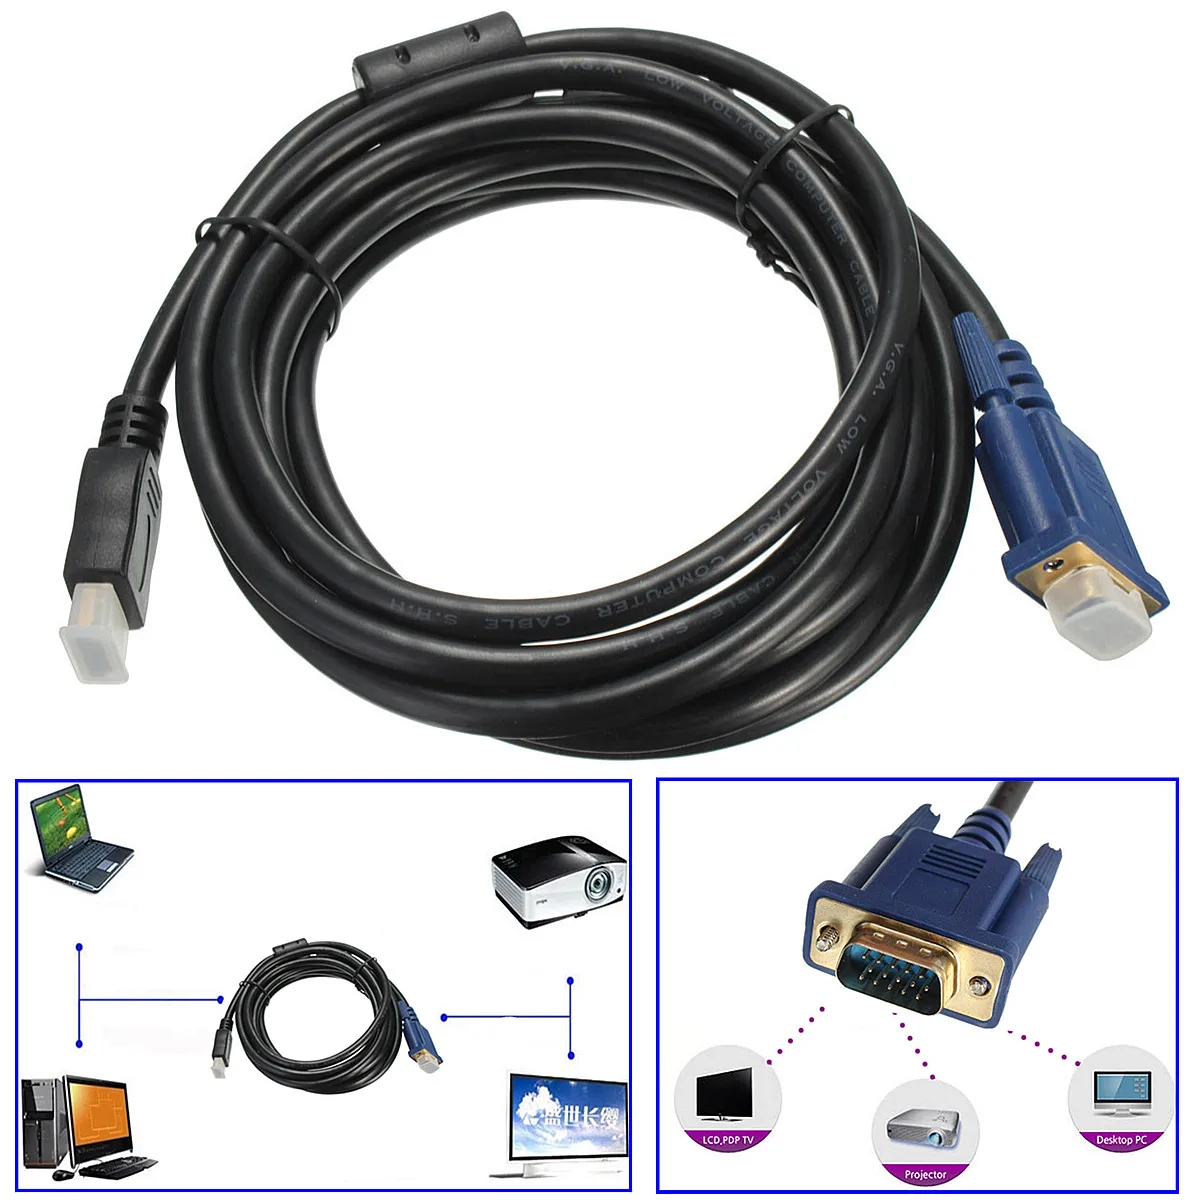 3 м адаптер штыревой HDMI на VGA Мужской 15 пин кабель адаптер конвертер позолоченный для ПК DVD цифро-аналоговый аудио видео кабель для ТВ